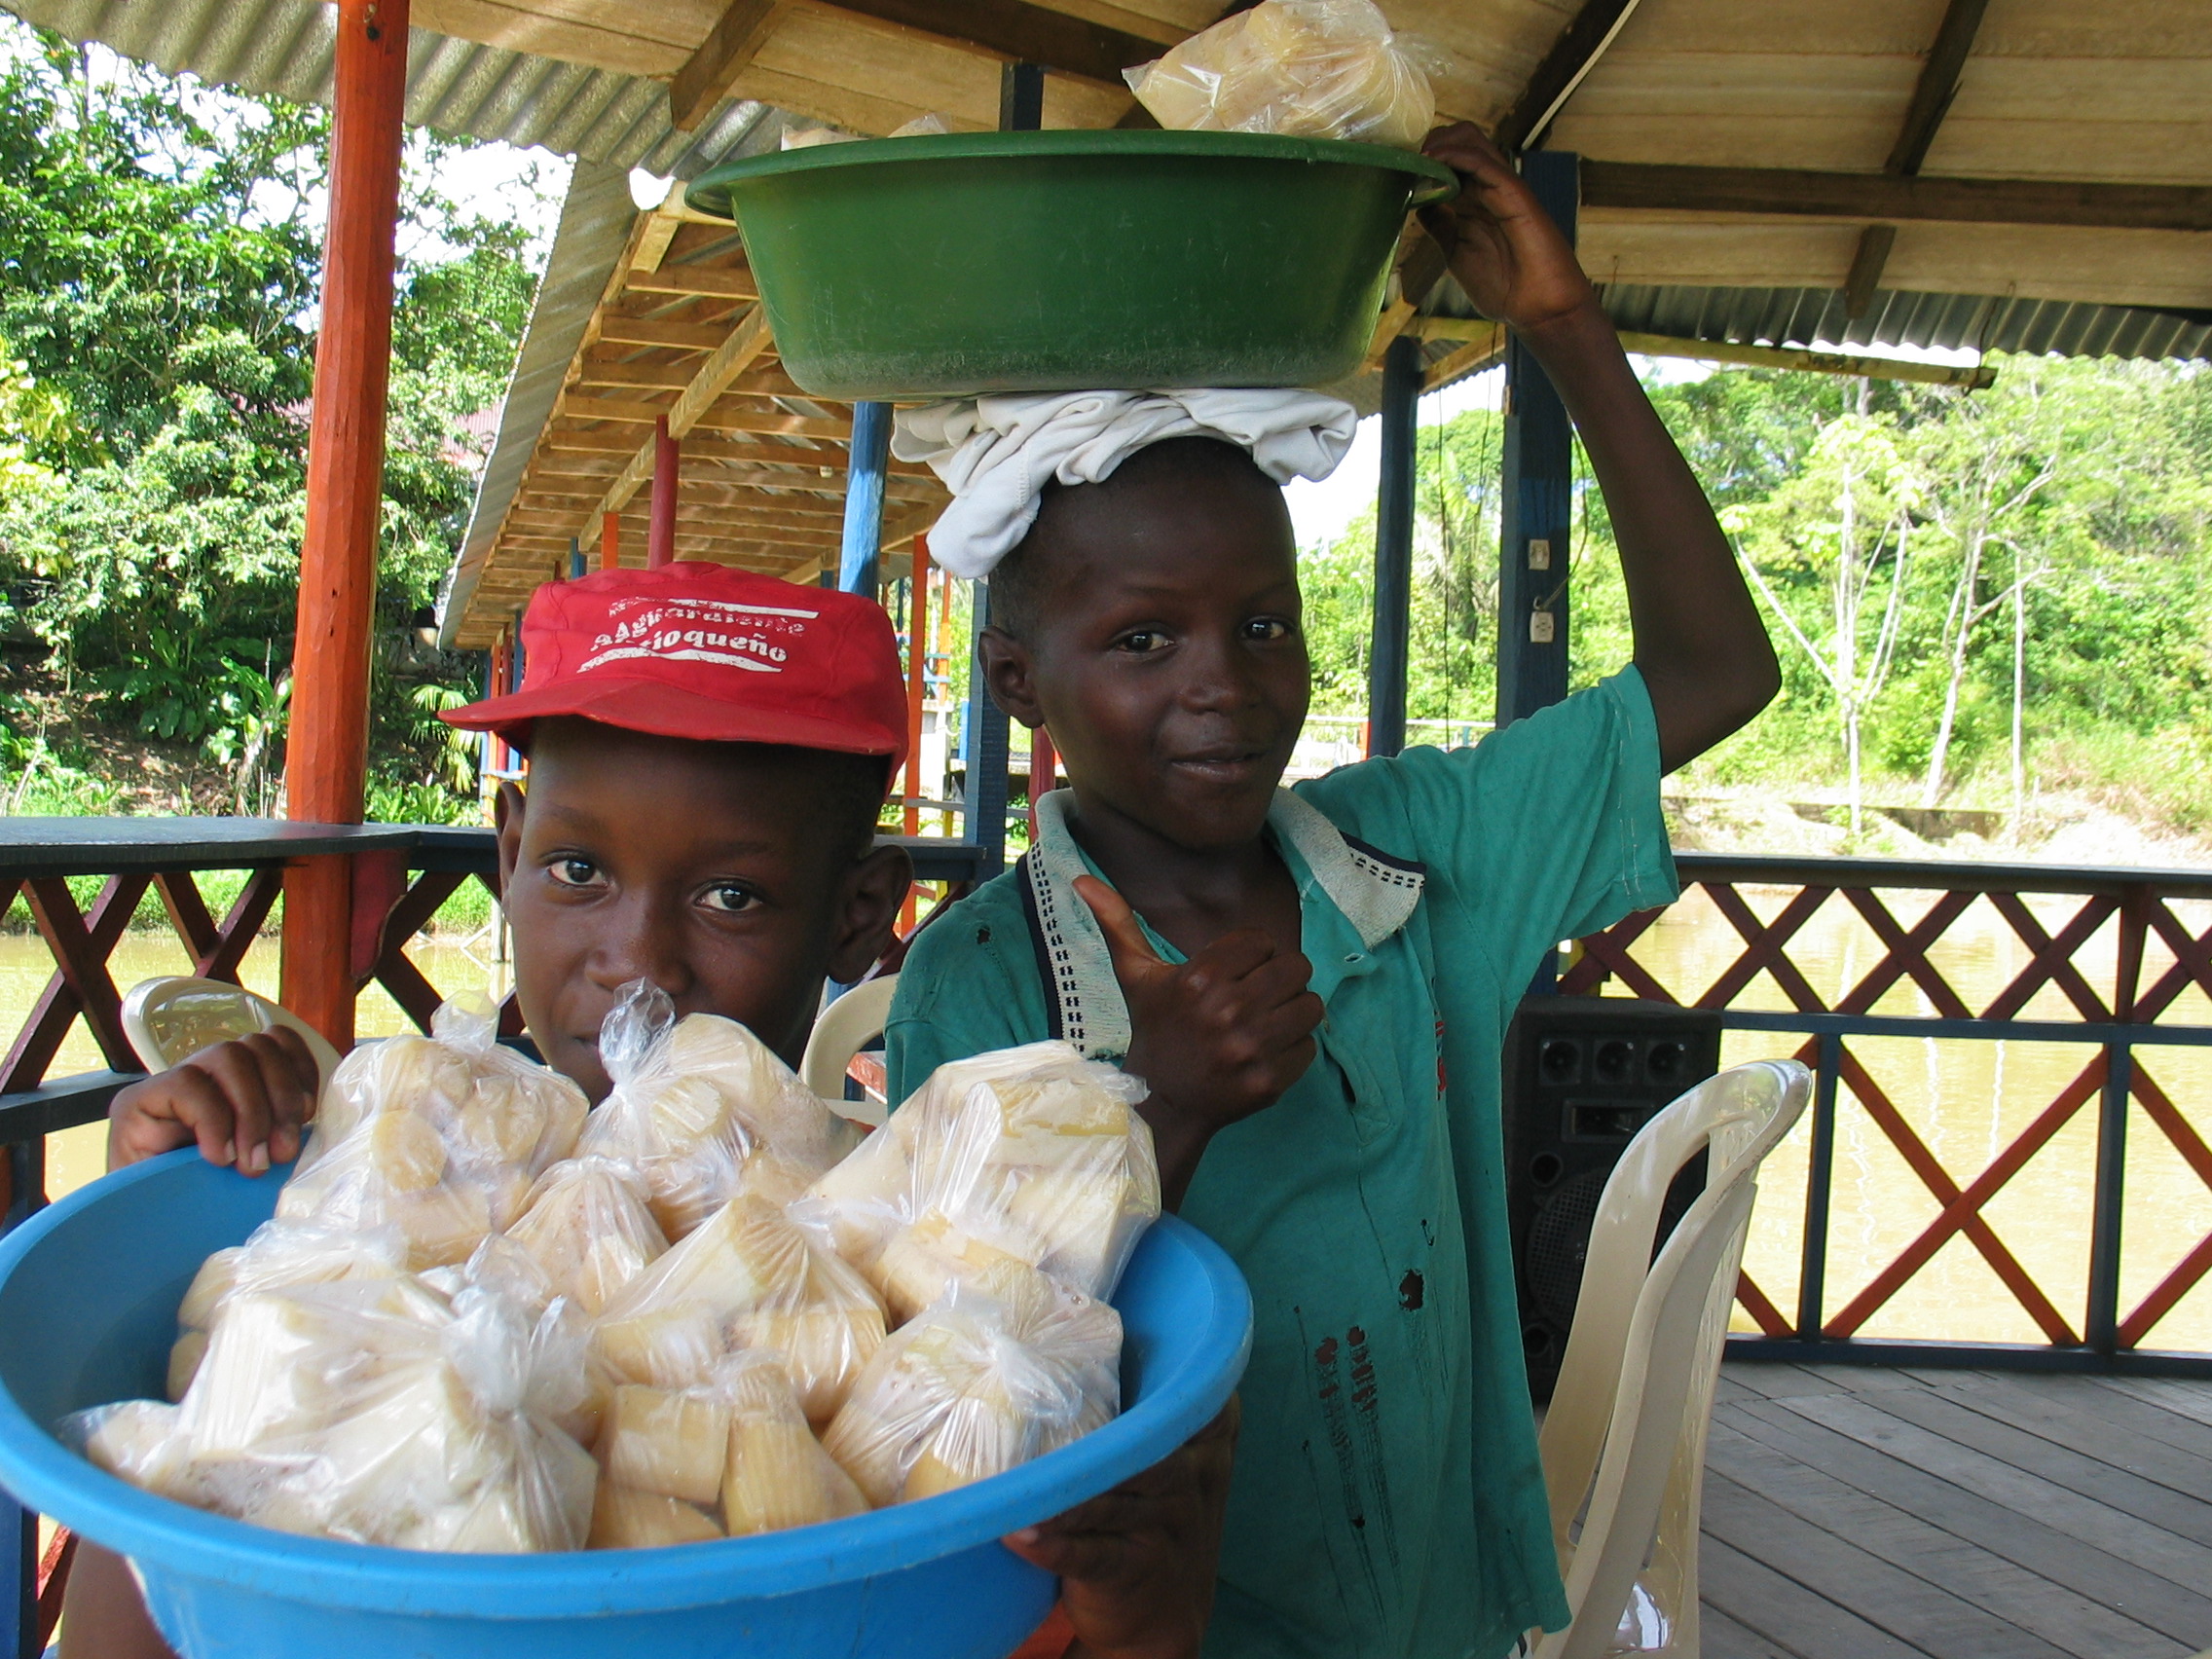 Kids selling sugar cane in Quibdo, Choco 8-27-06.JPG